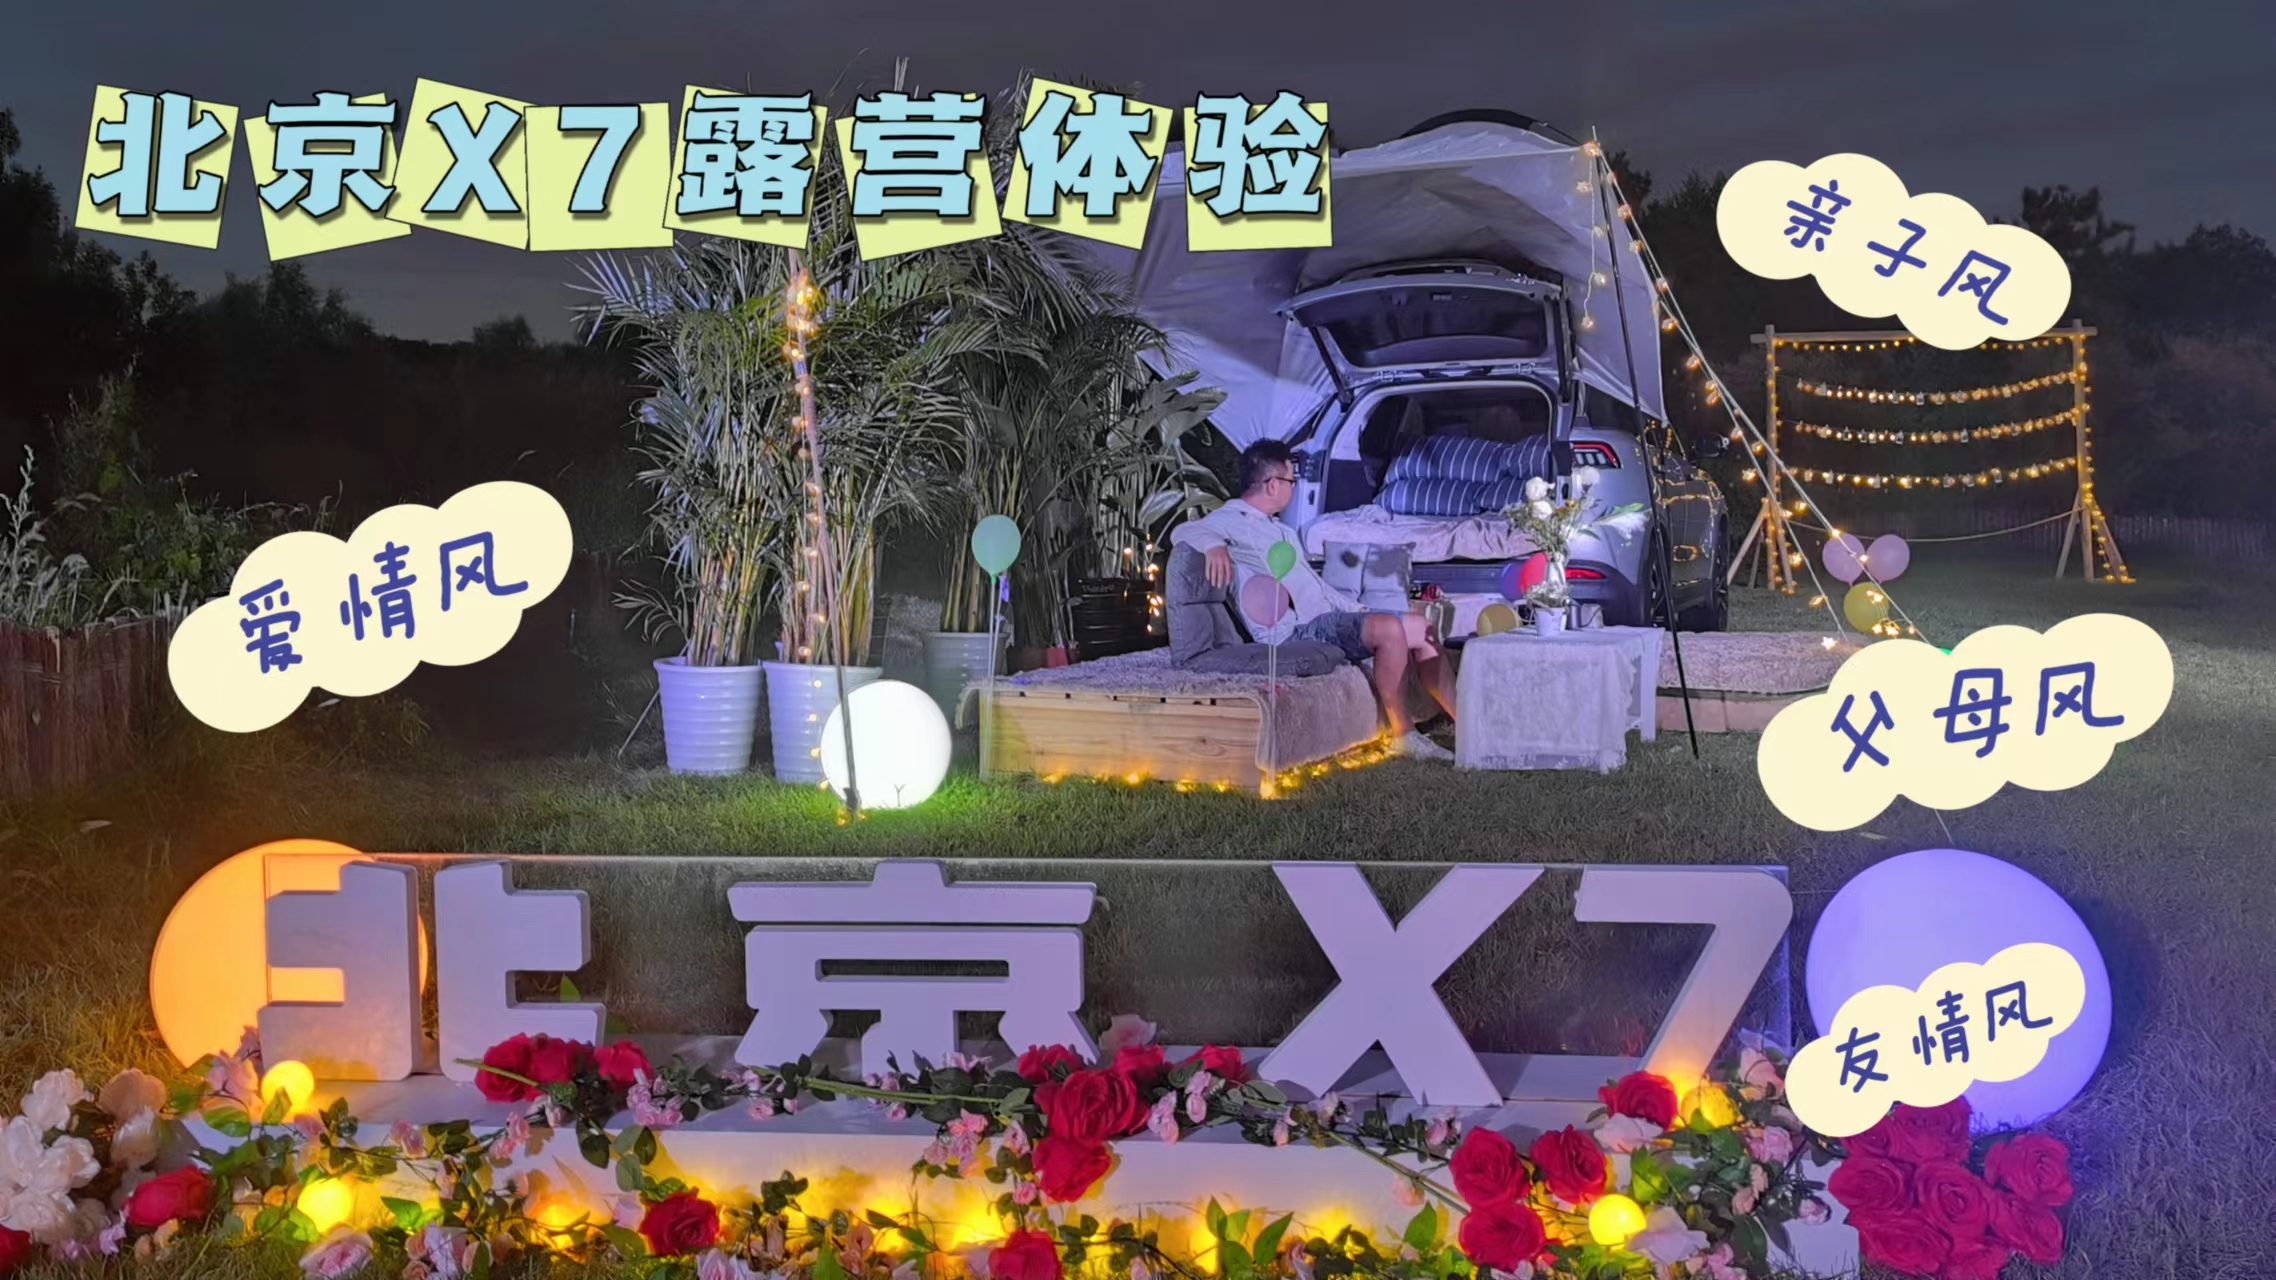 北京X7豪气的私募电影 体验不同的露营风格